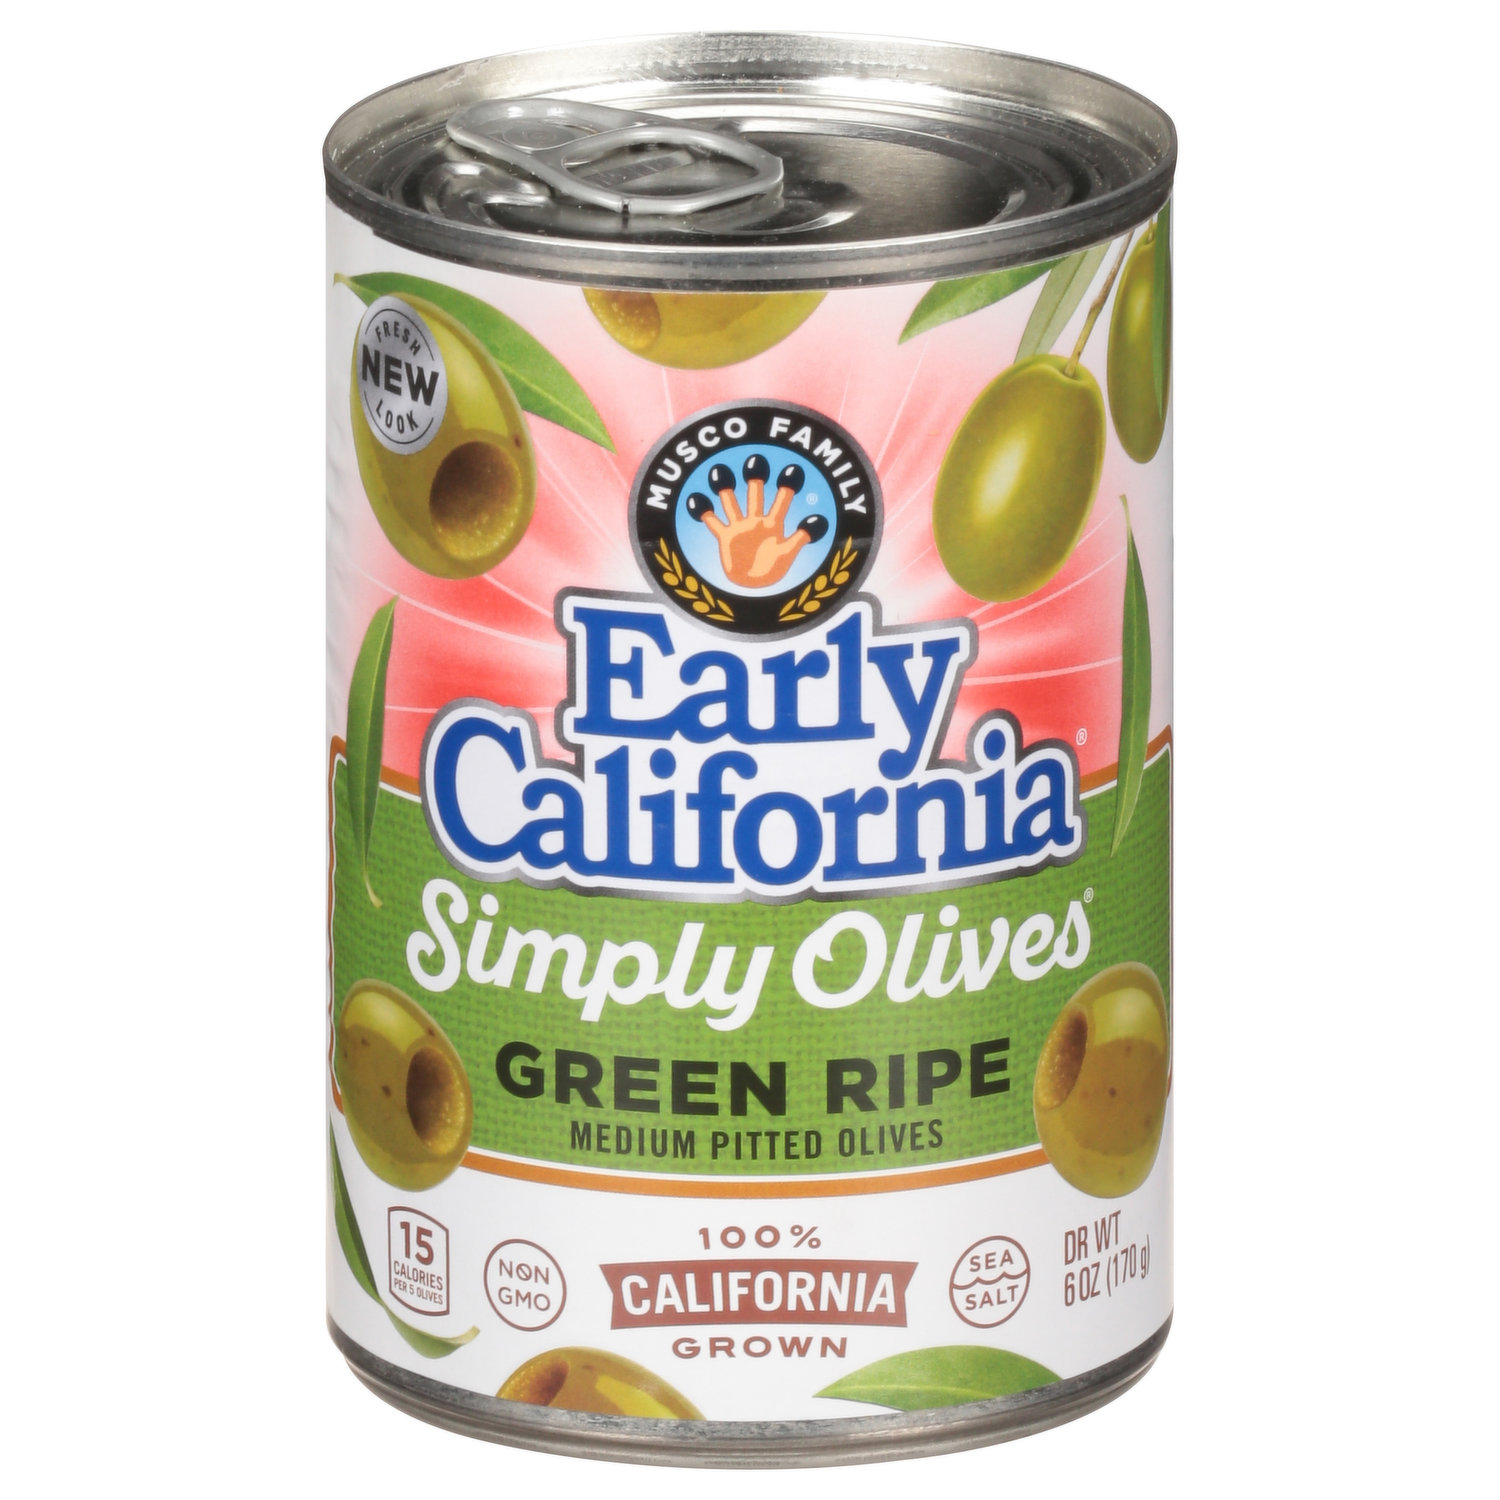 CAPONE OLIVE OIL 1/2 GALLON – Capone Foods